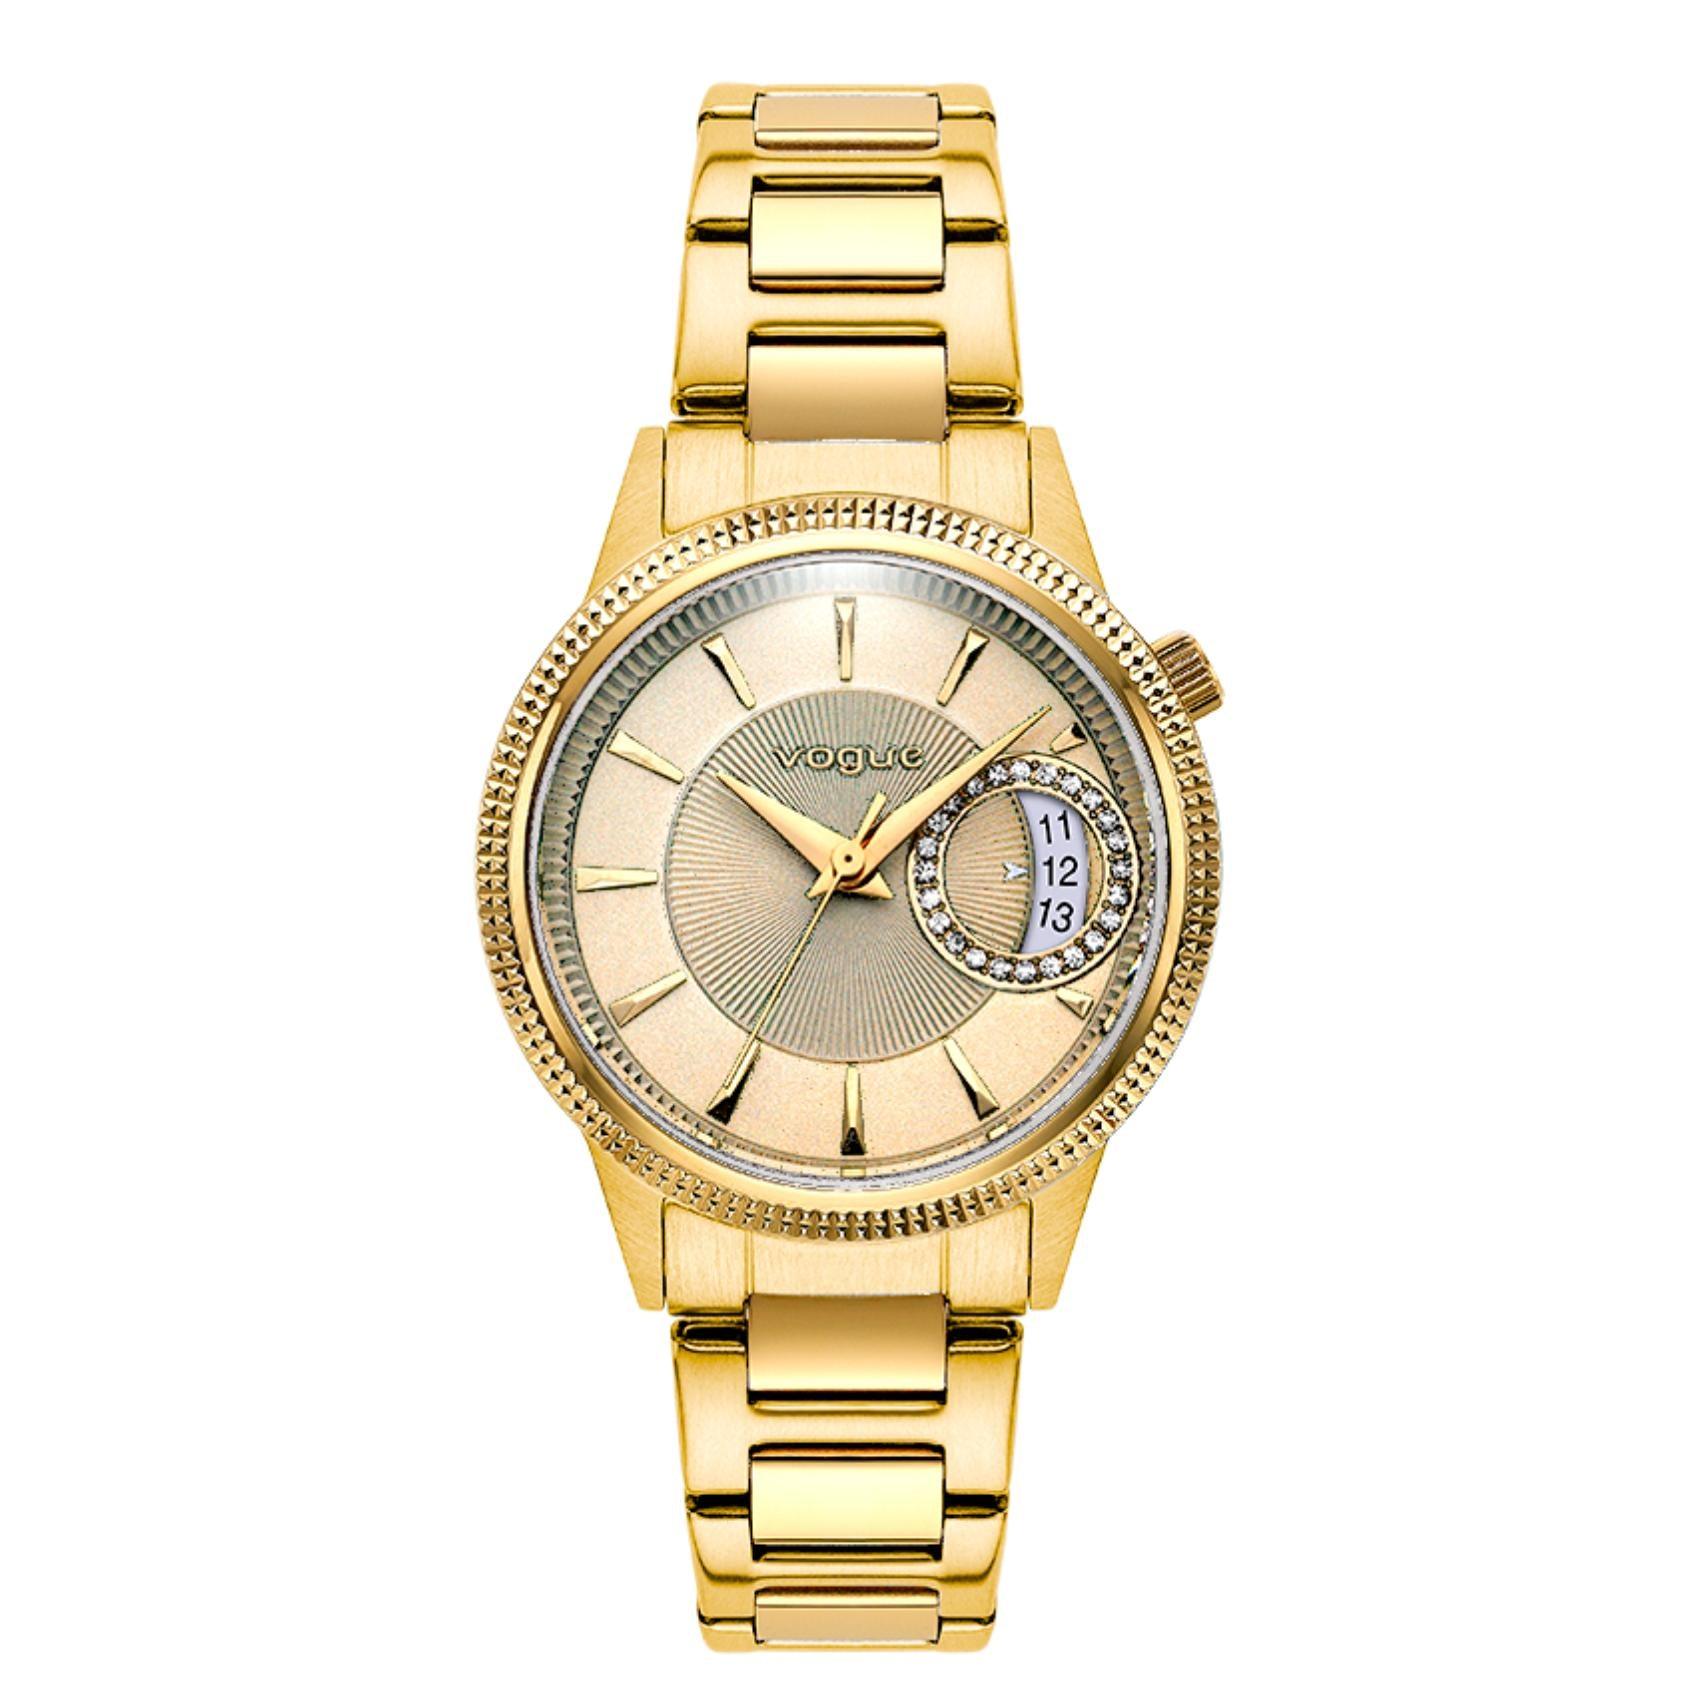 Γυναικείο ρολόι VOGUE Marseille 2020613141 με χρυσό ατσάλινο μπρασελέ, χρυσό καντράν και χρυσούς δείκτες με ένδειξη ημερομηνίας και ζιργκόν περιμετρικά στο εσωτερικό του.